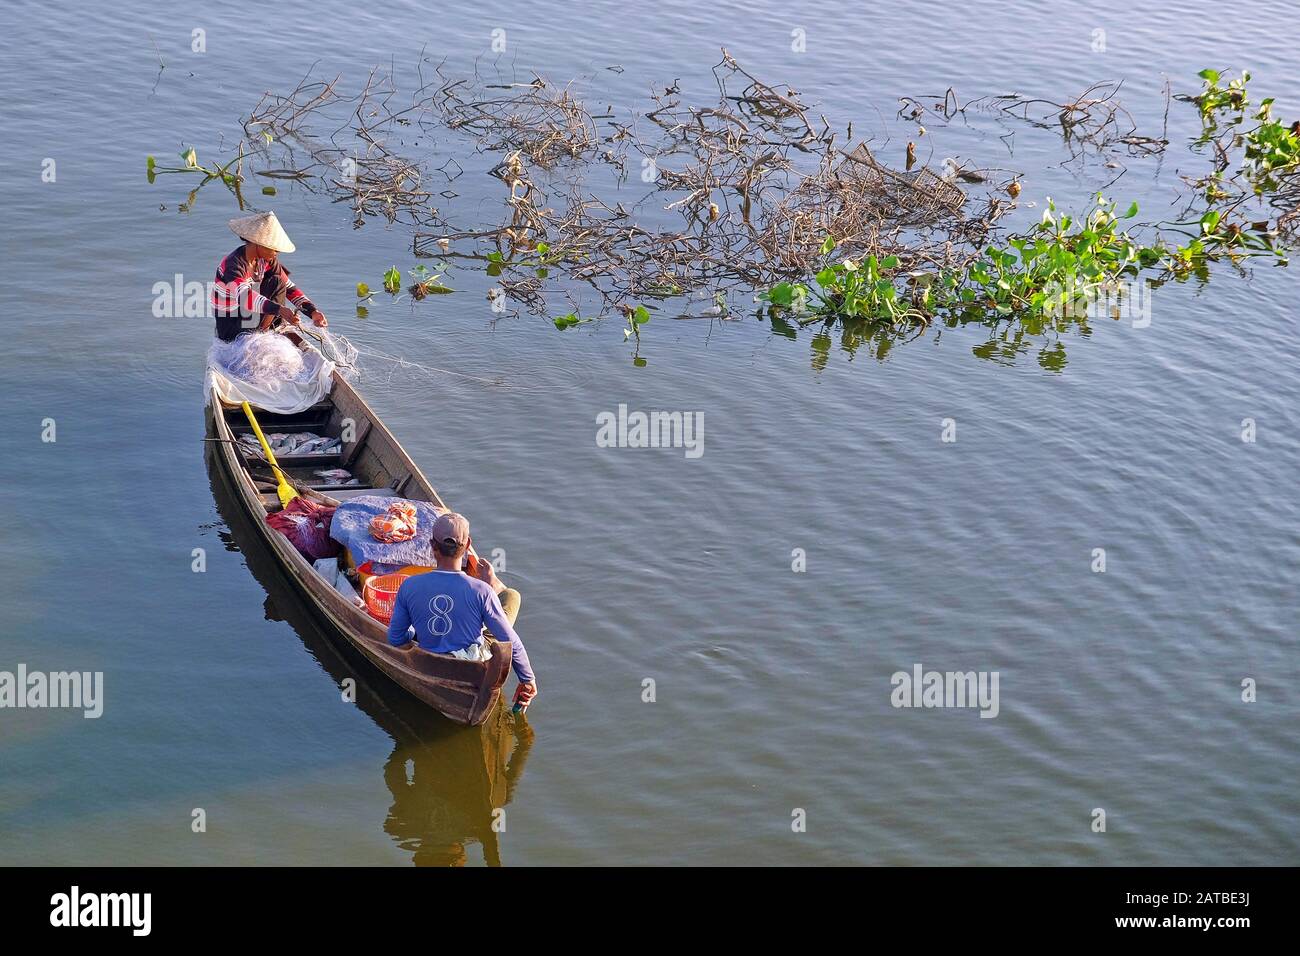 Menschen in einem traditionellen Fischerboot auf dem Taung Tha Man Lake, in der Nähe der U Bein-Brücke, Mandalay, in Myanmar, in der Nähe schwimmender grüner Vegetation. Stockfoto